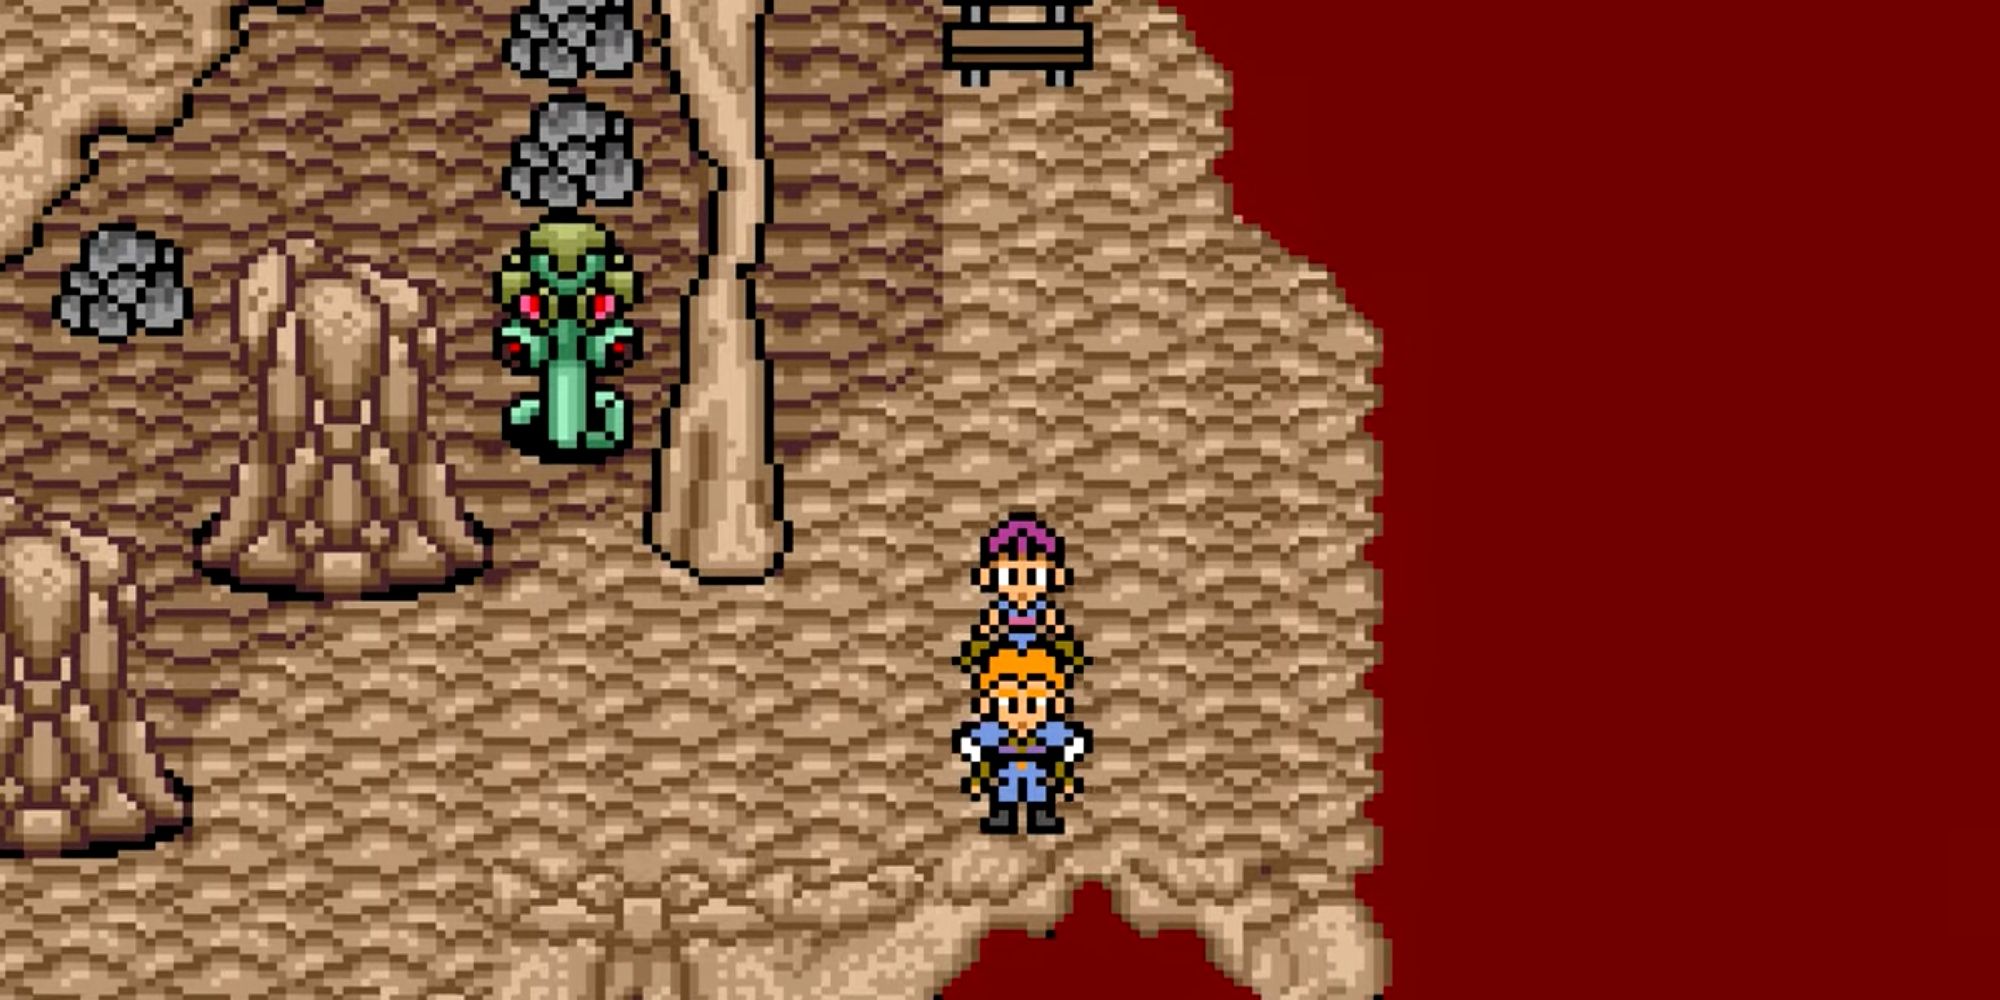 Player explores a desert for rare items